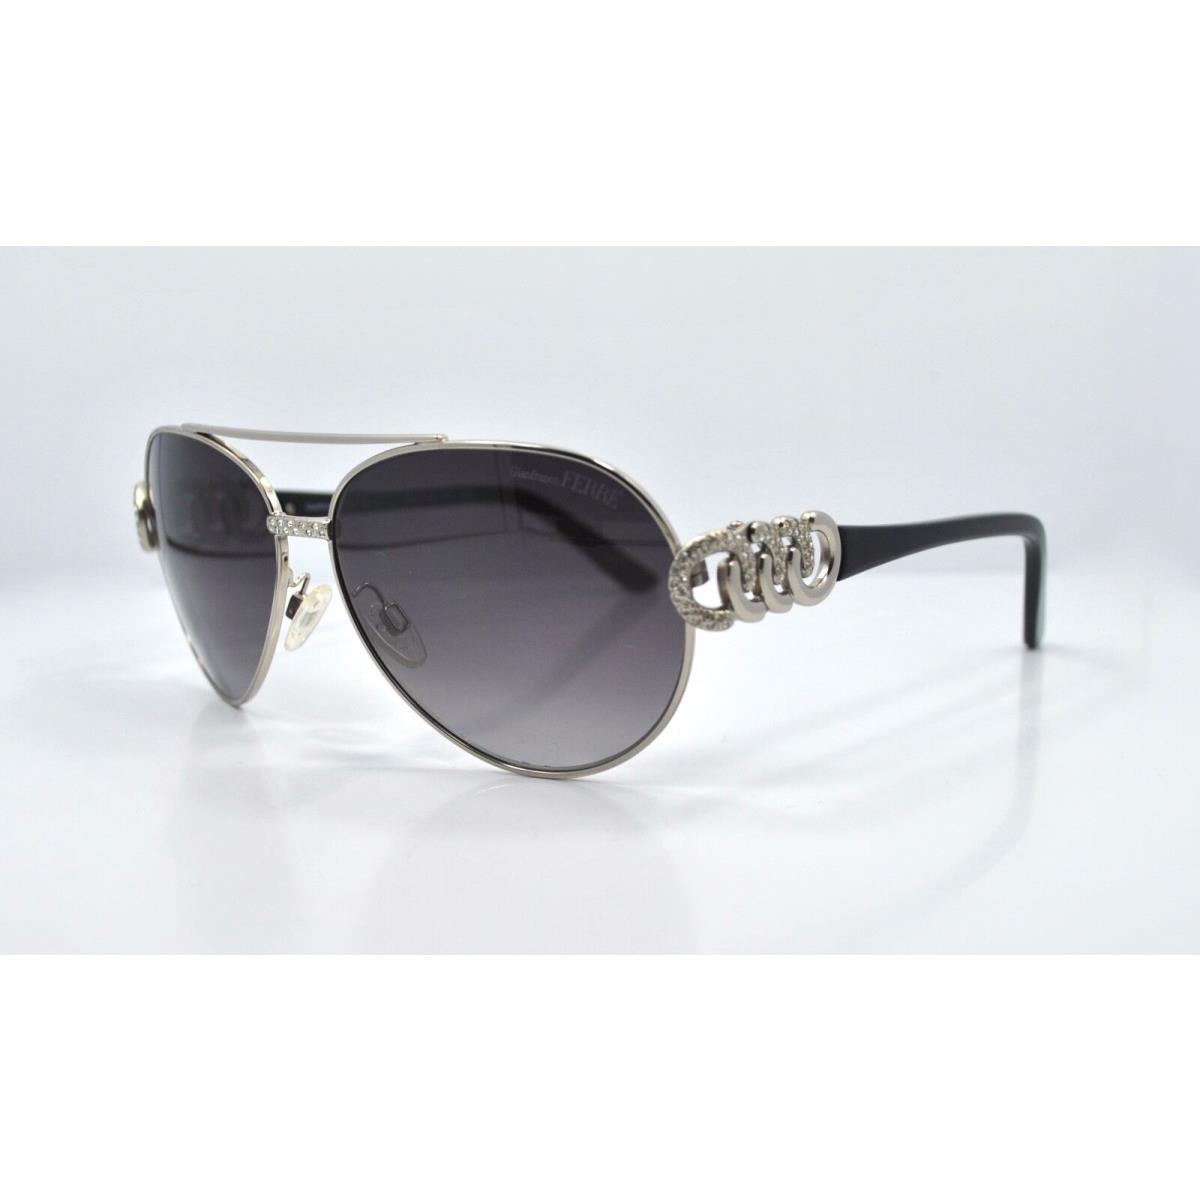 Gianfranco Ferre GF977-03 P51 Sunglasses Frames